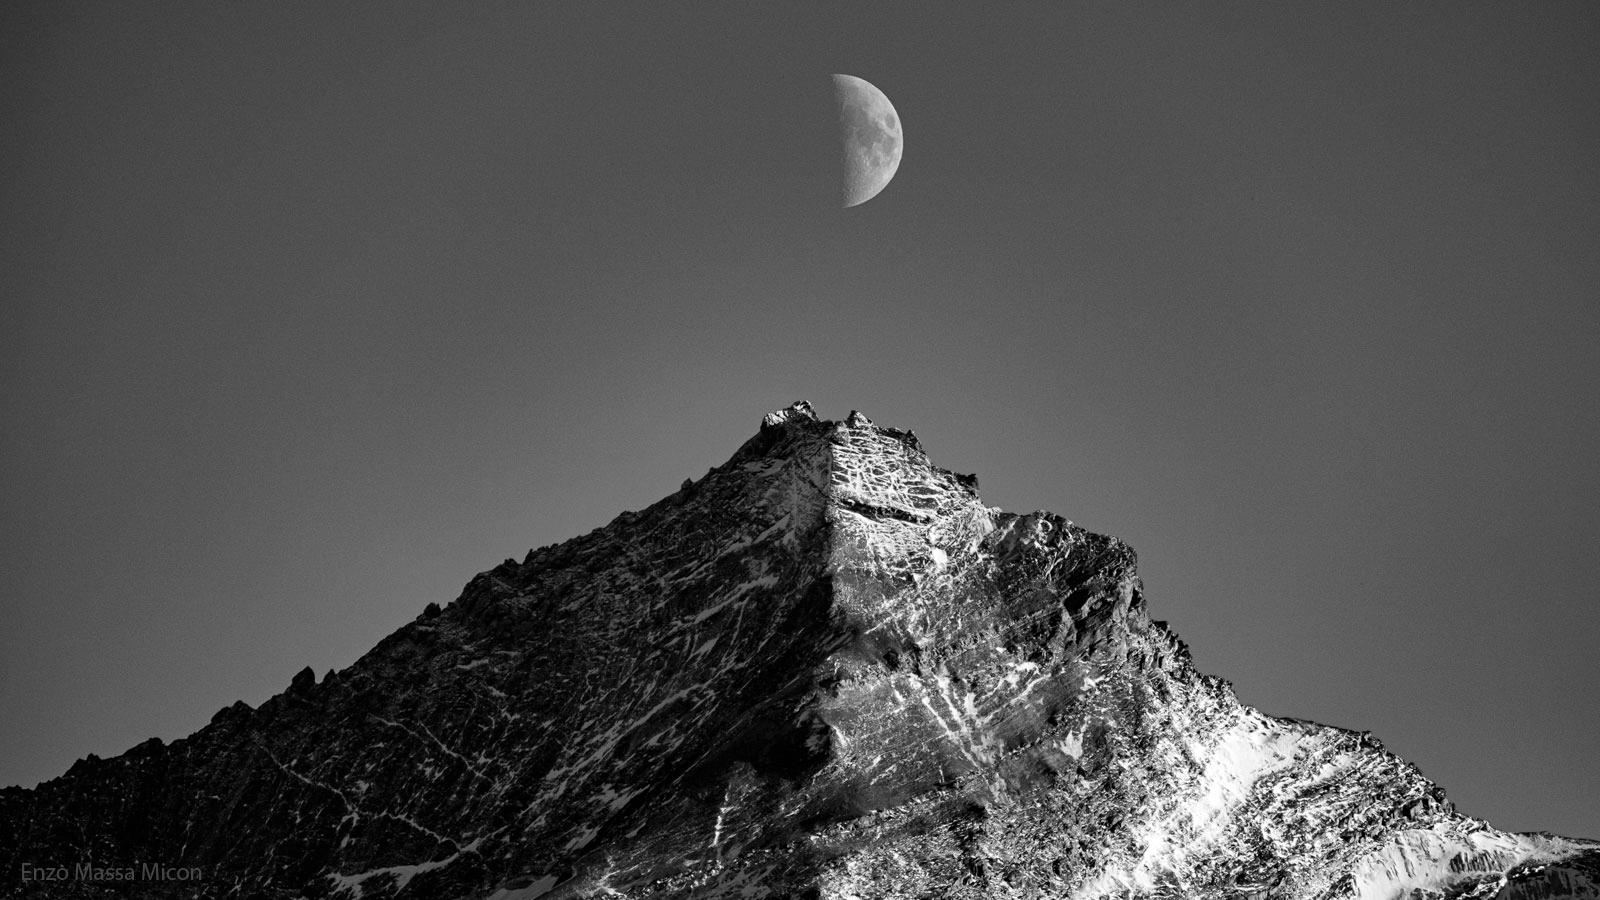 صورة بيضاء وسوداء يظهر فيها القمر وجبل. كلاهما نصف مُضائَين بواسطة الشمس، مع كون النصف الآخر مُظلّلاً. يكون نصف القمر فوق قمّة الجبل مُباشرةً.